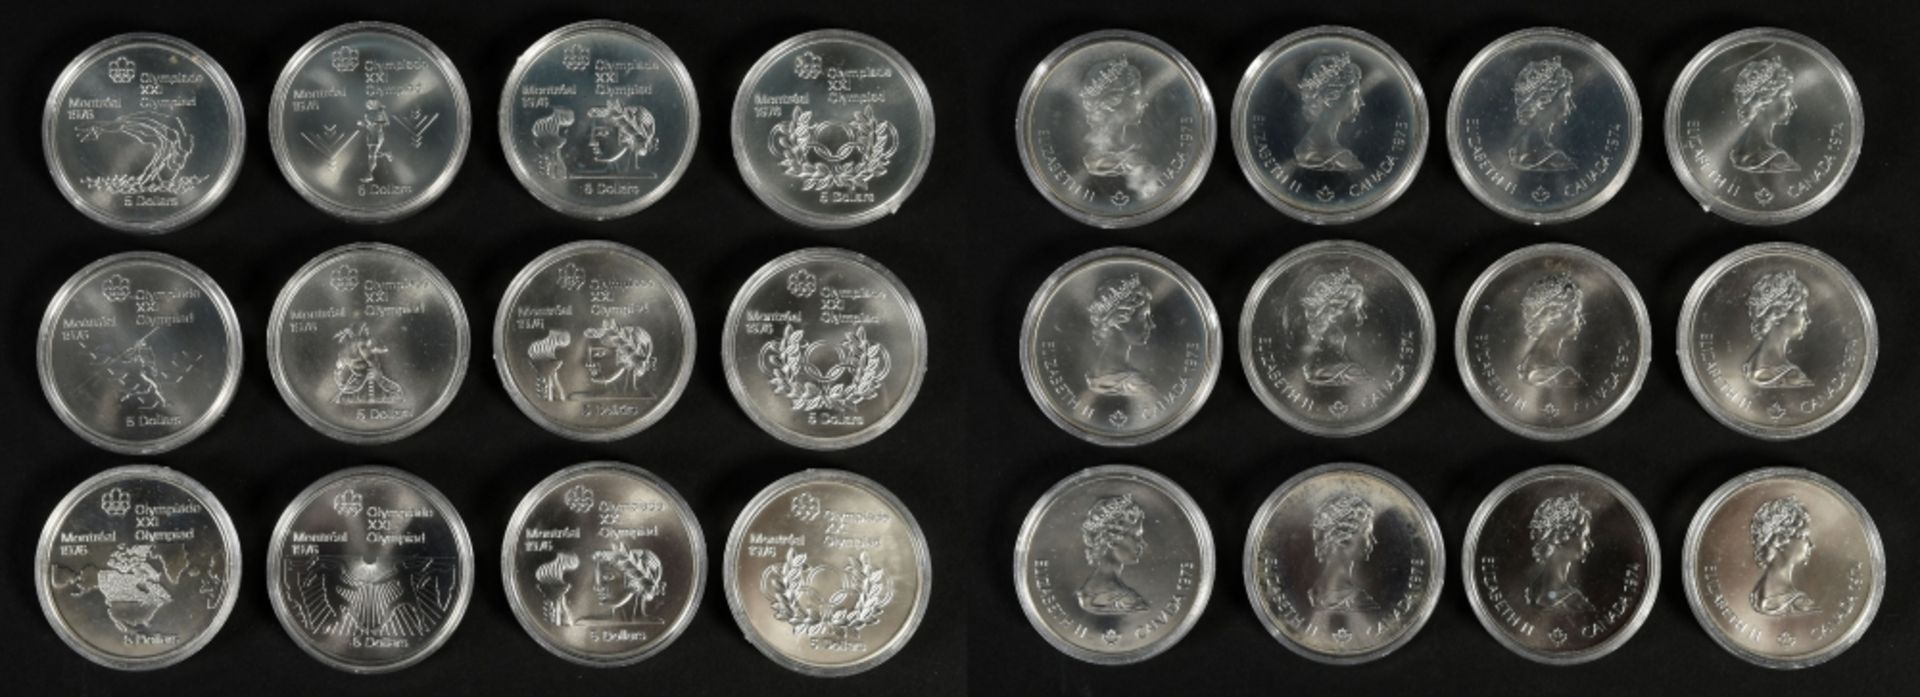 Münzen, 12 Stück - Silbermünzen "5 Dollar Olympiade XXI, Montreal 1976" - Image 2 of 3